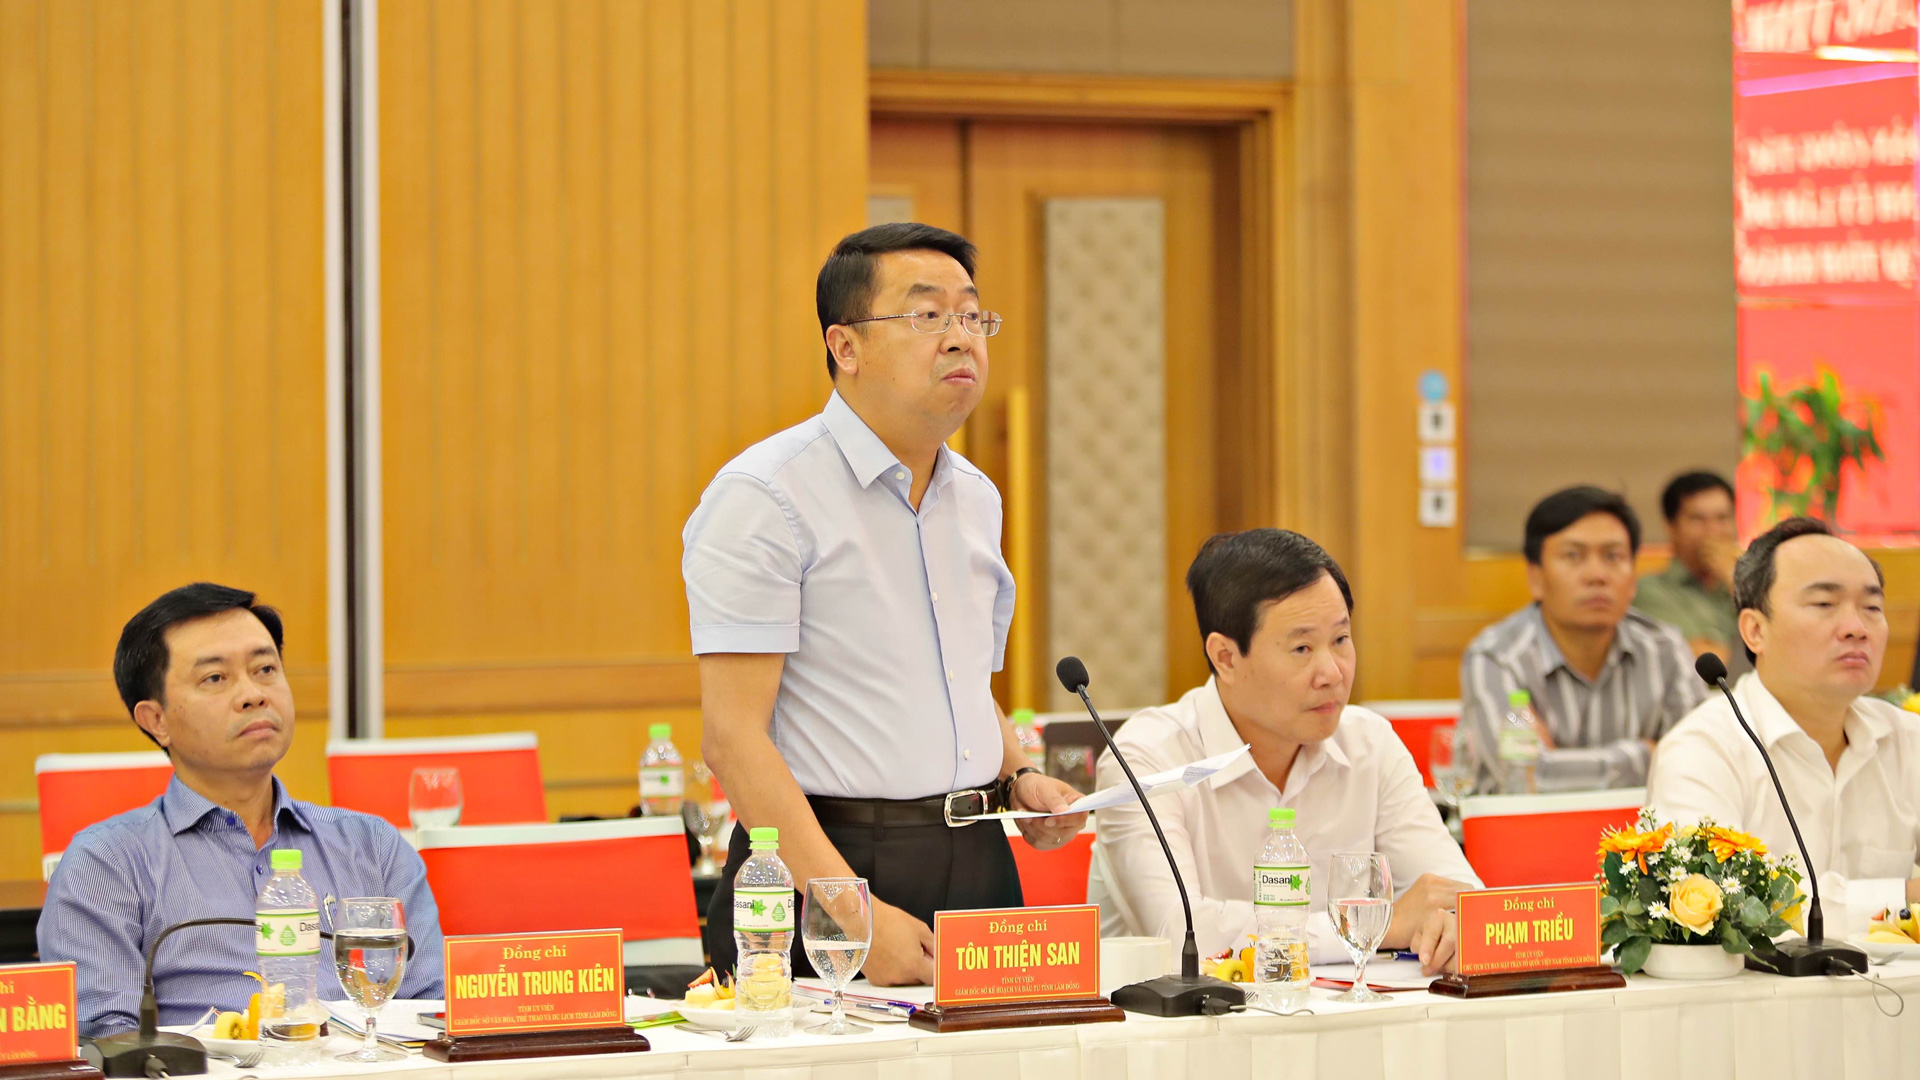 Đồng chí Tôn Thiện San, Giám đốc Sở KHĐT Lâm Đồng phát biểu